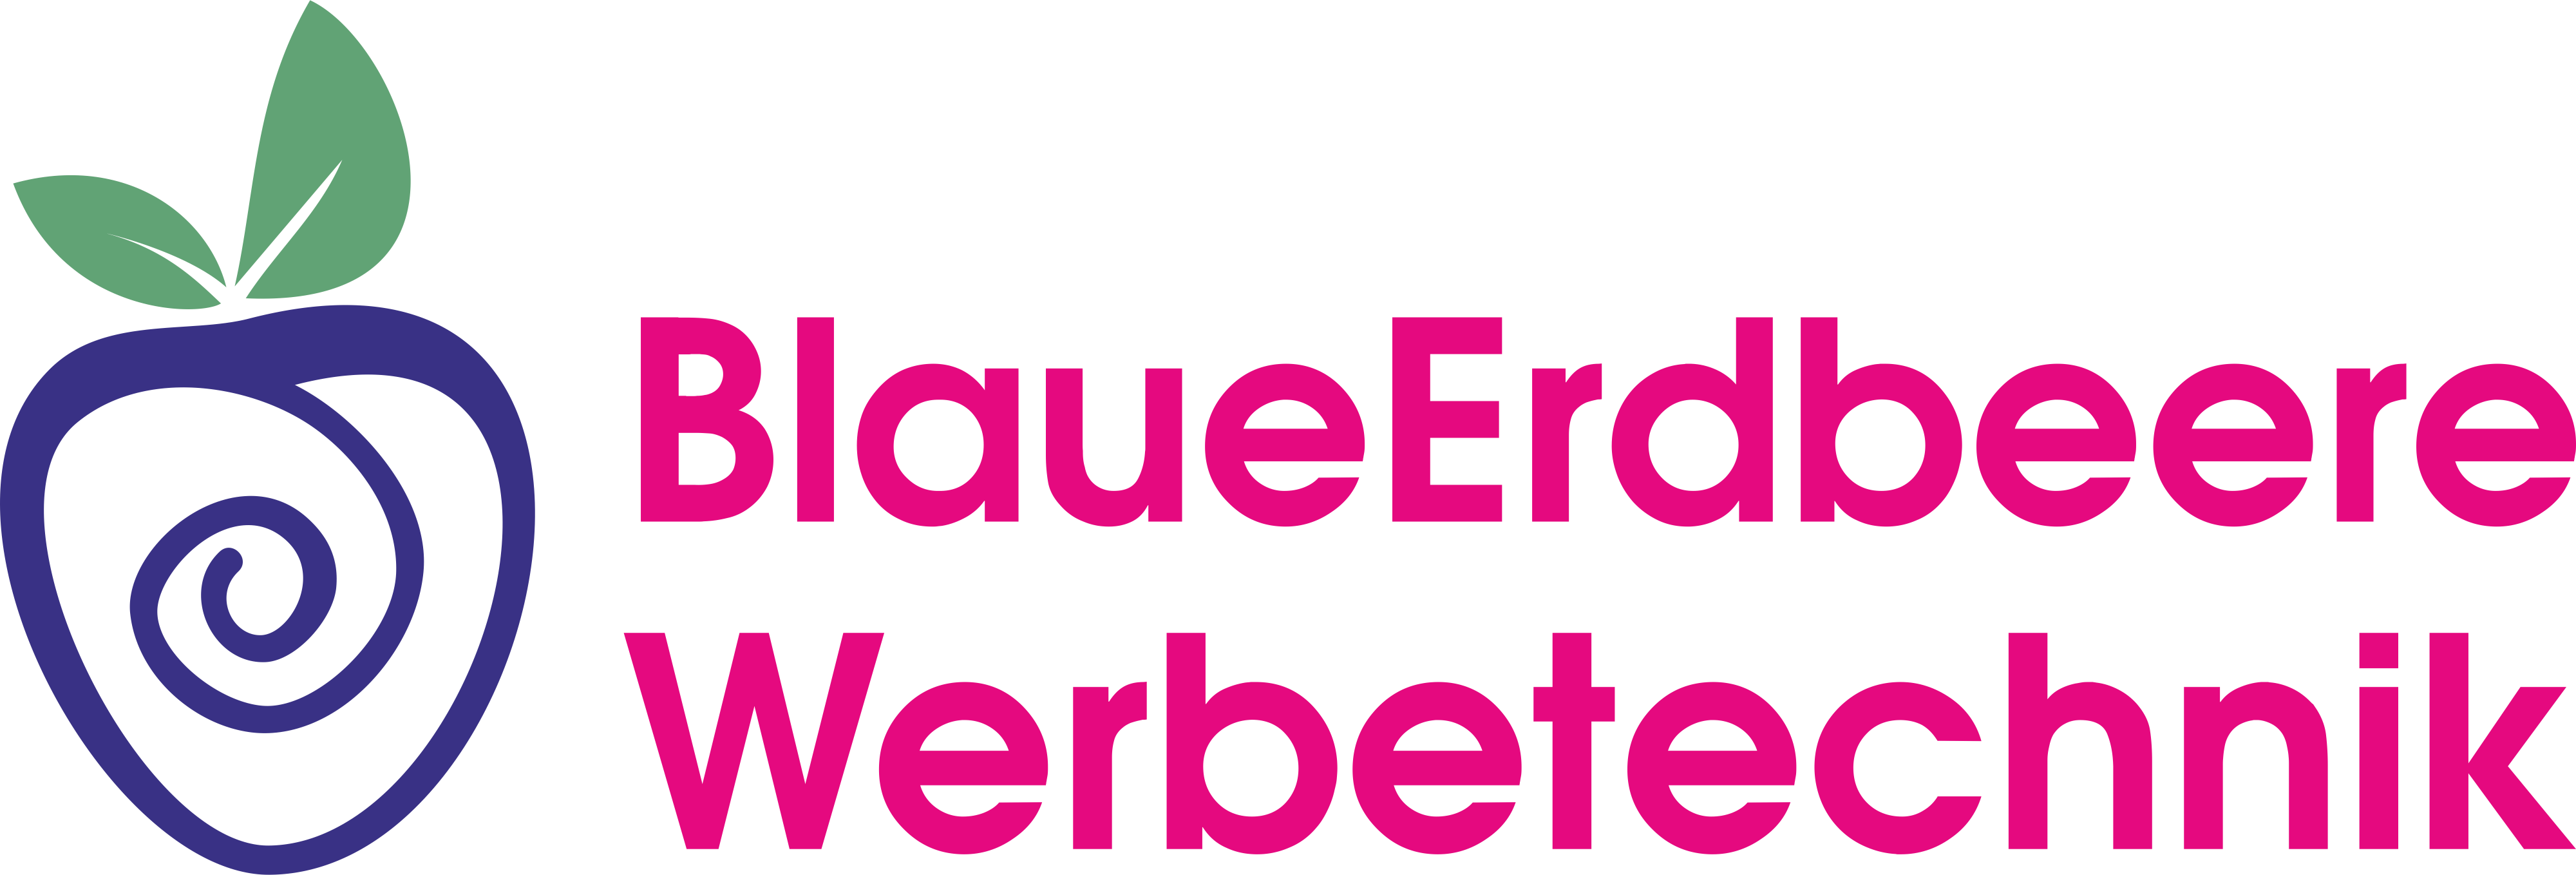 Blaue Erdbeere Werbetechnik GmbH